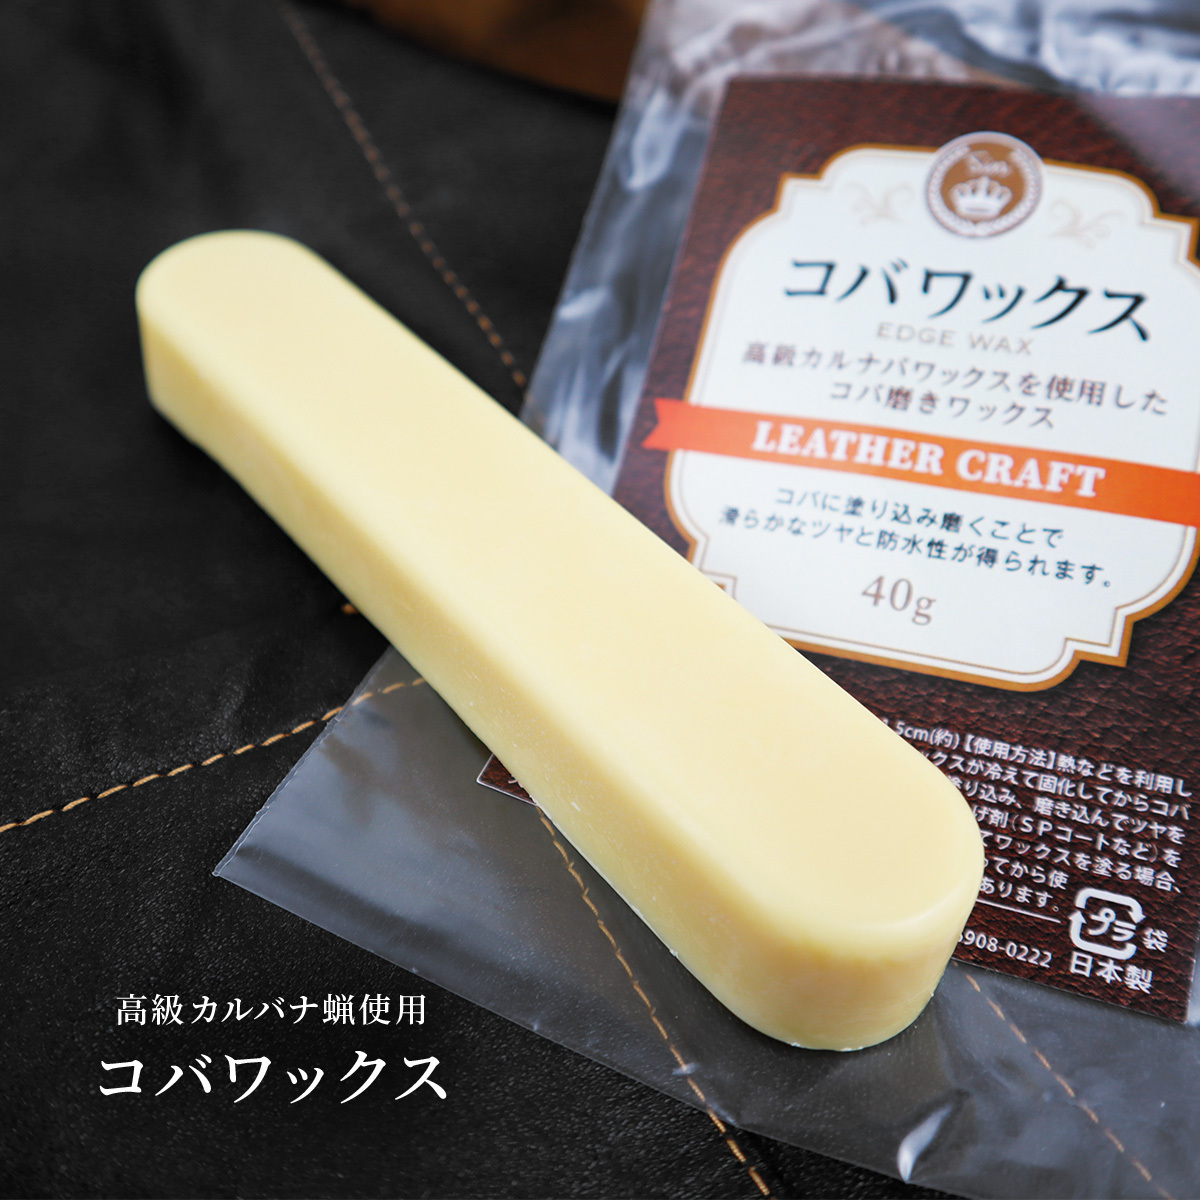 Kobawax для японской кожи для кожи, бесцветная роскошная карнаба воск 40G (ок.)